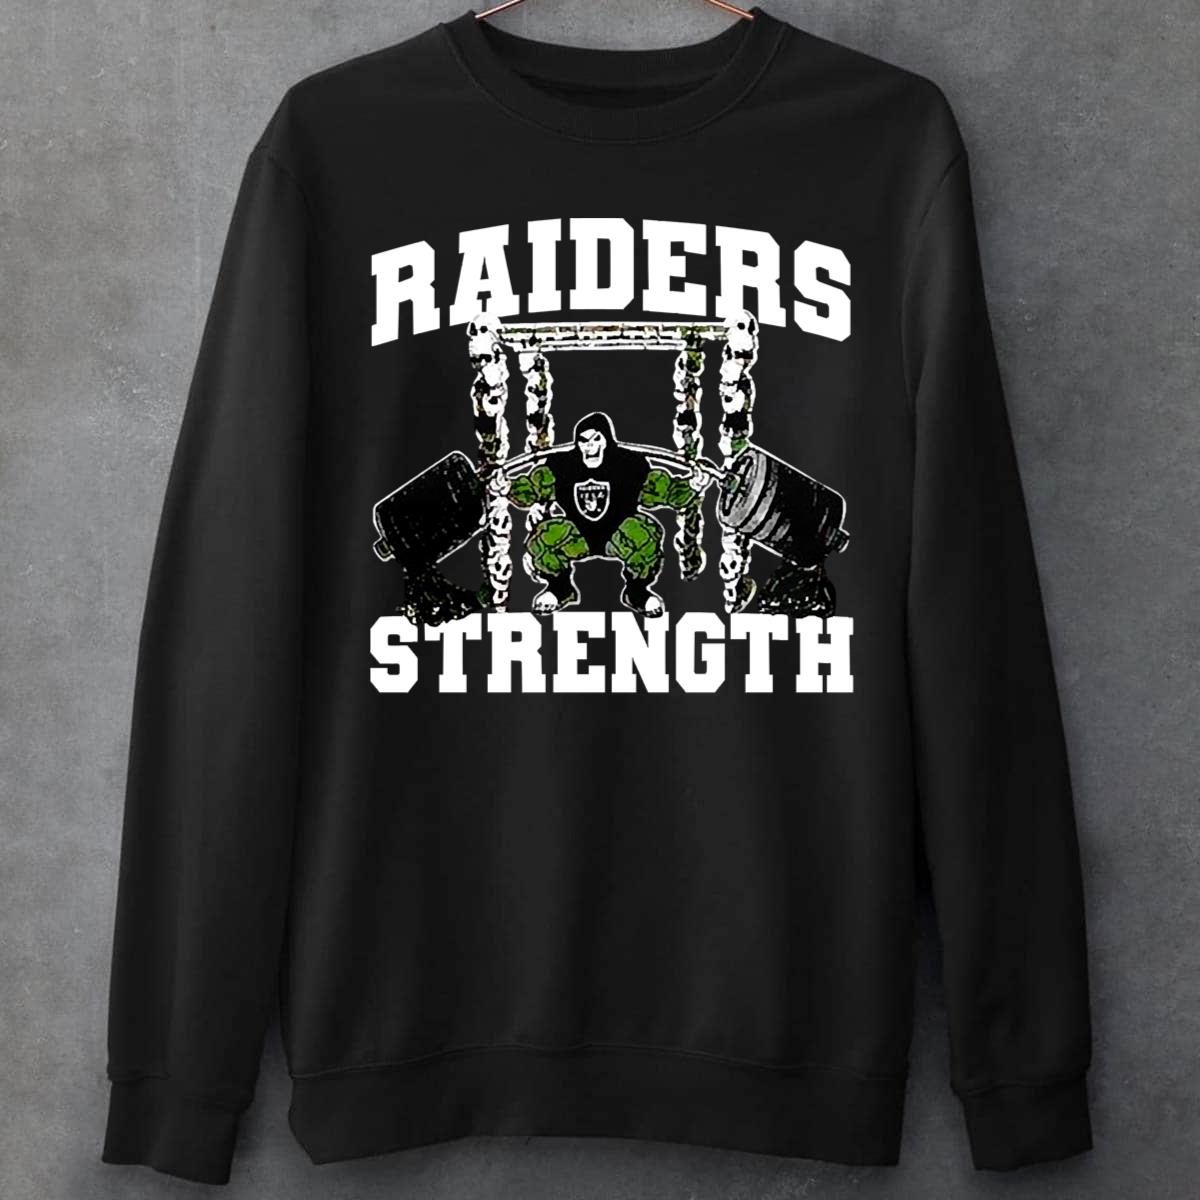 Raiders Strength Unisex T-Shirt